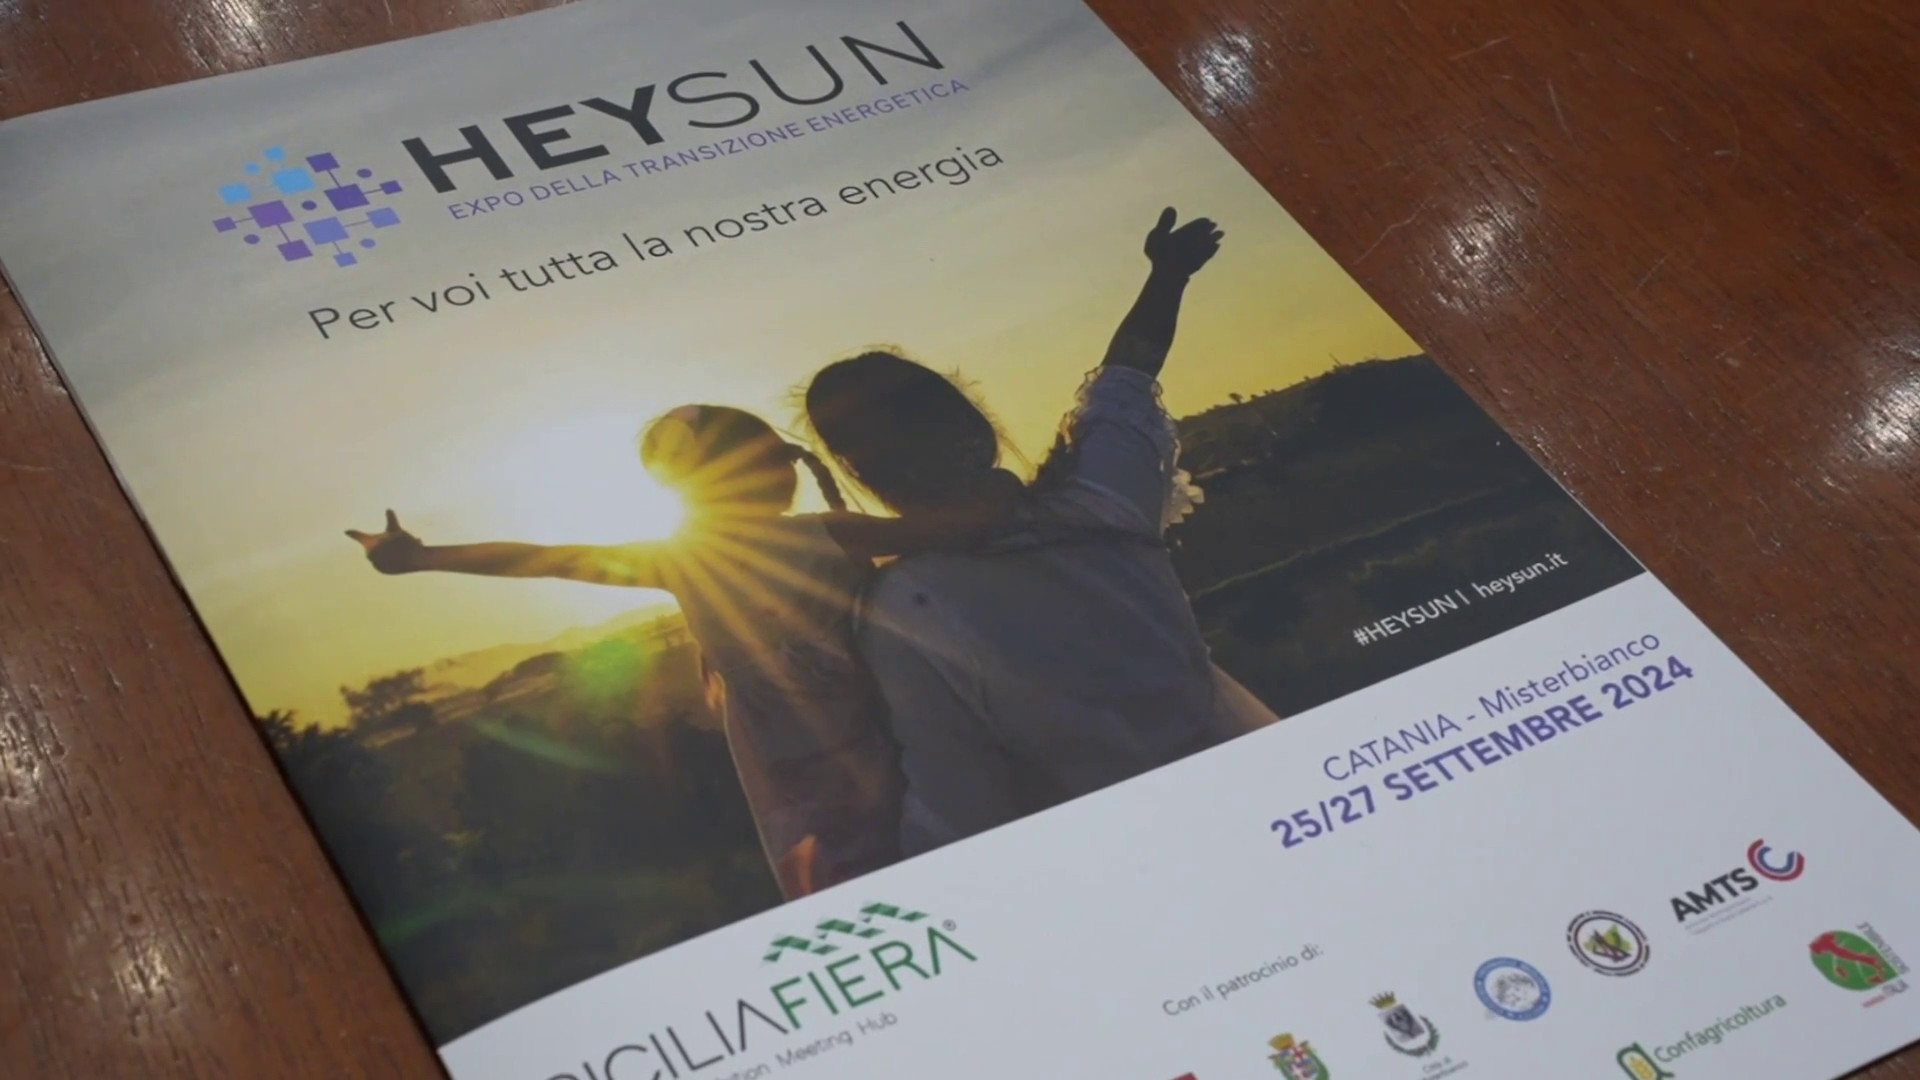 Heysun, in Sicilia l’Expo della transizione energetica